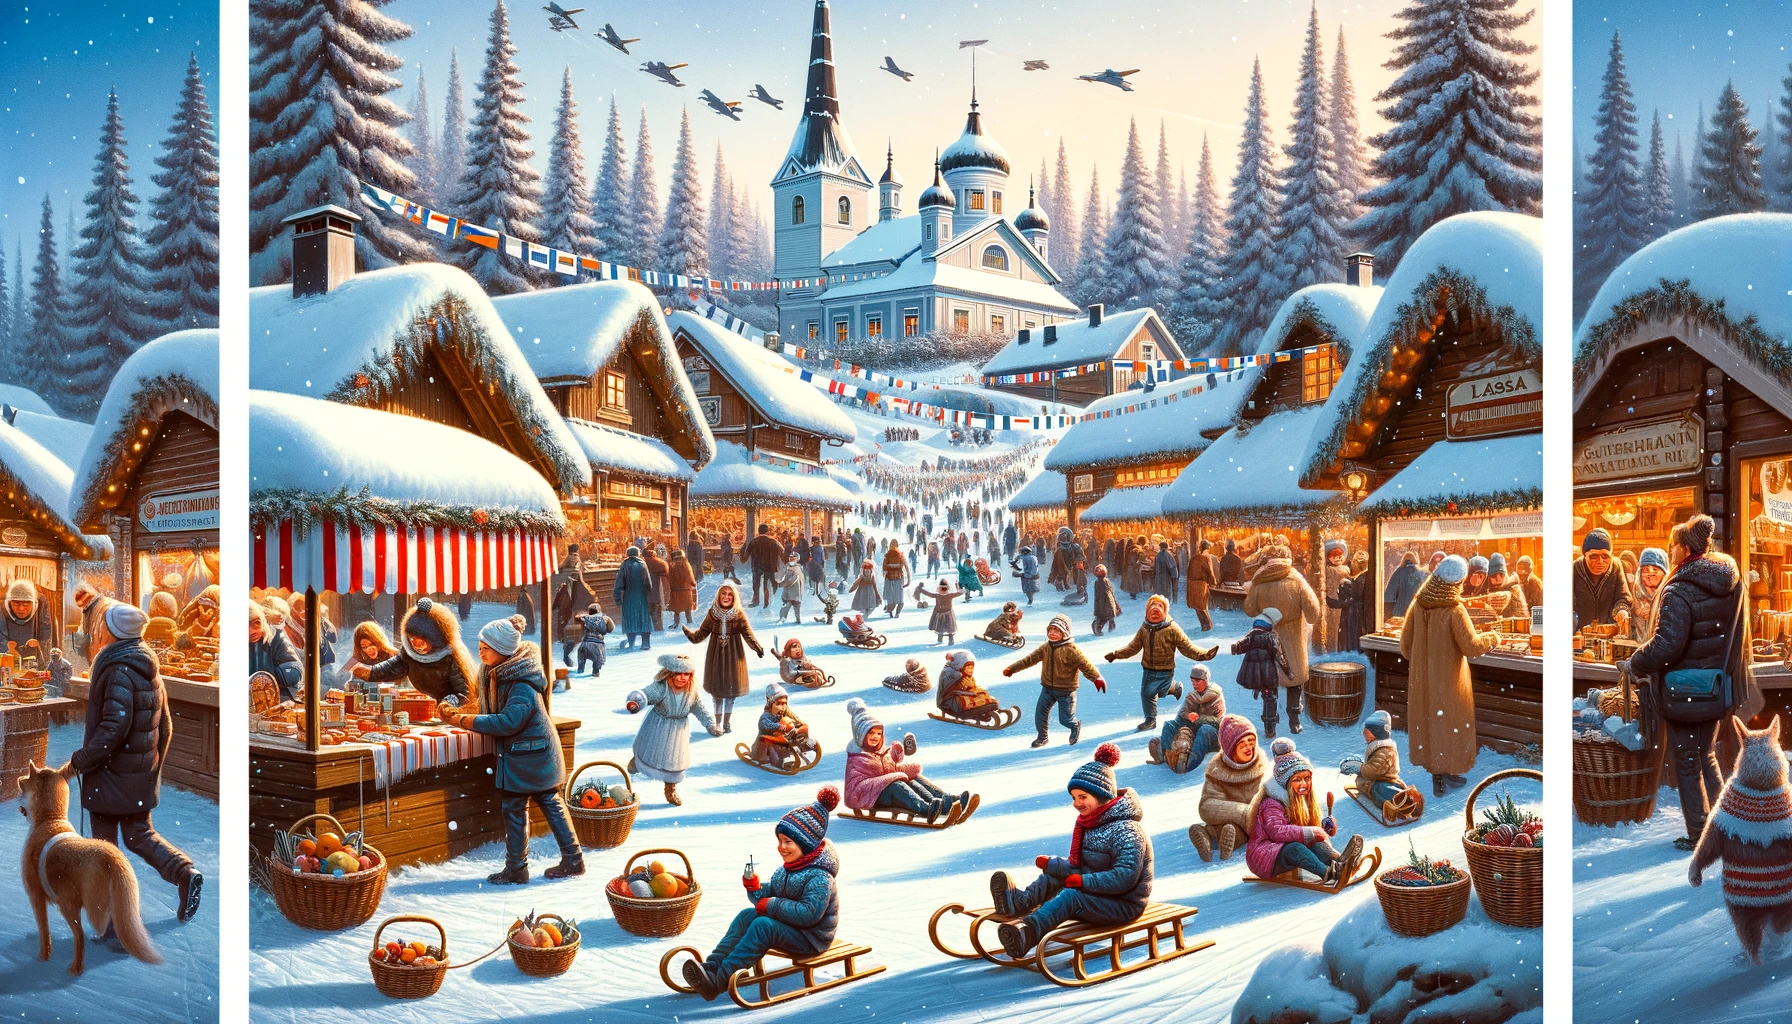 Festiwal Laskiainen w Finlandii z ludźmi cieszącymi się z jazdy na sankach i festiwalowymi straganami w śnieżnym krajobrazie.